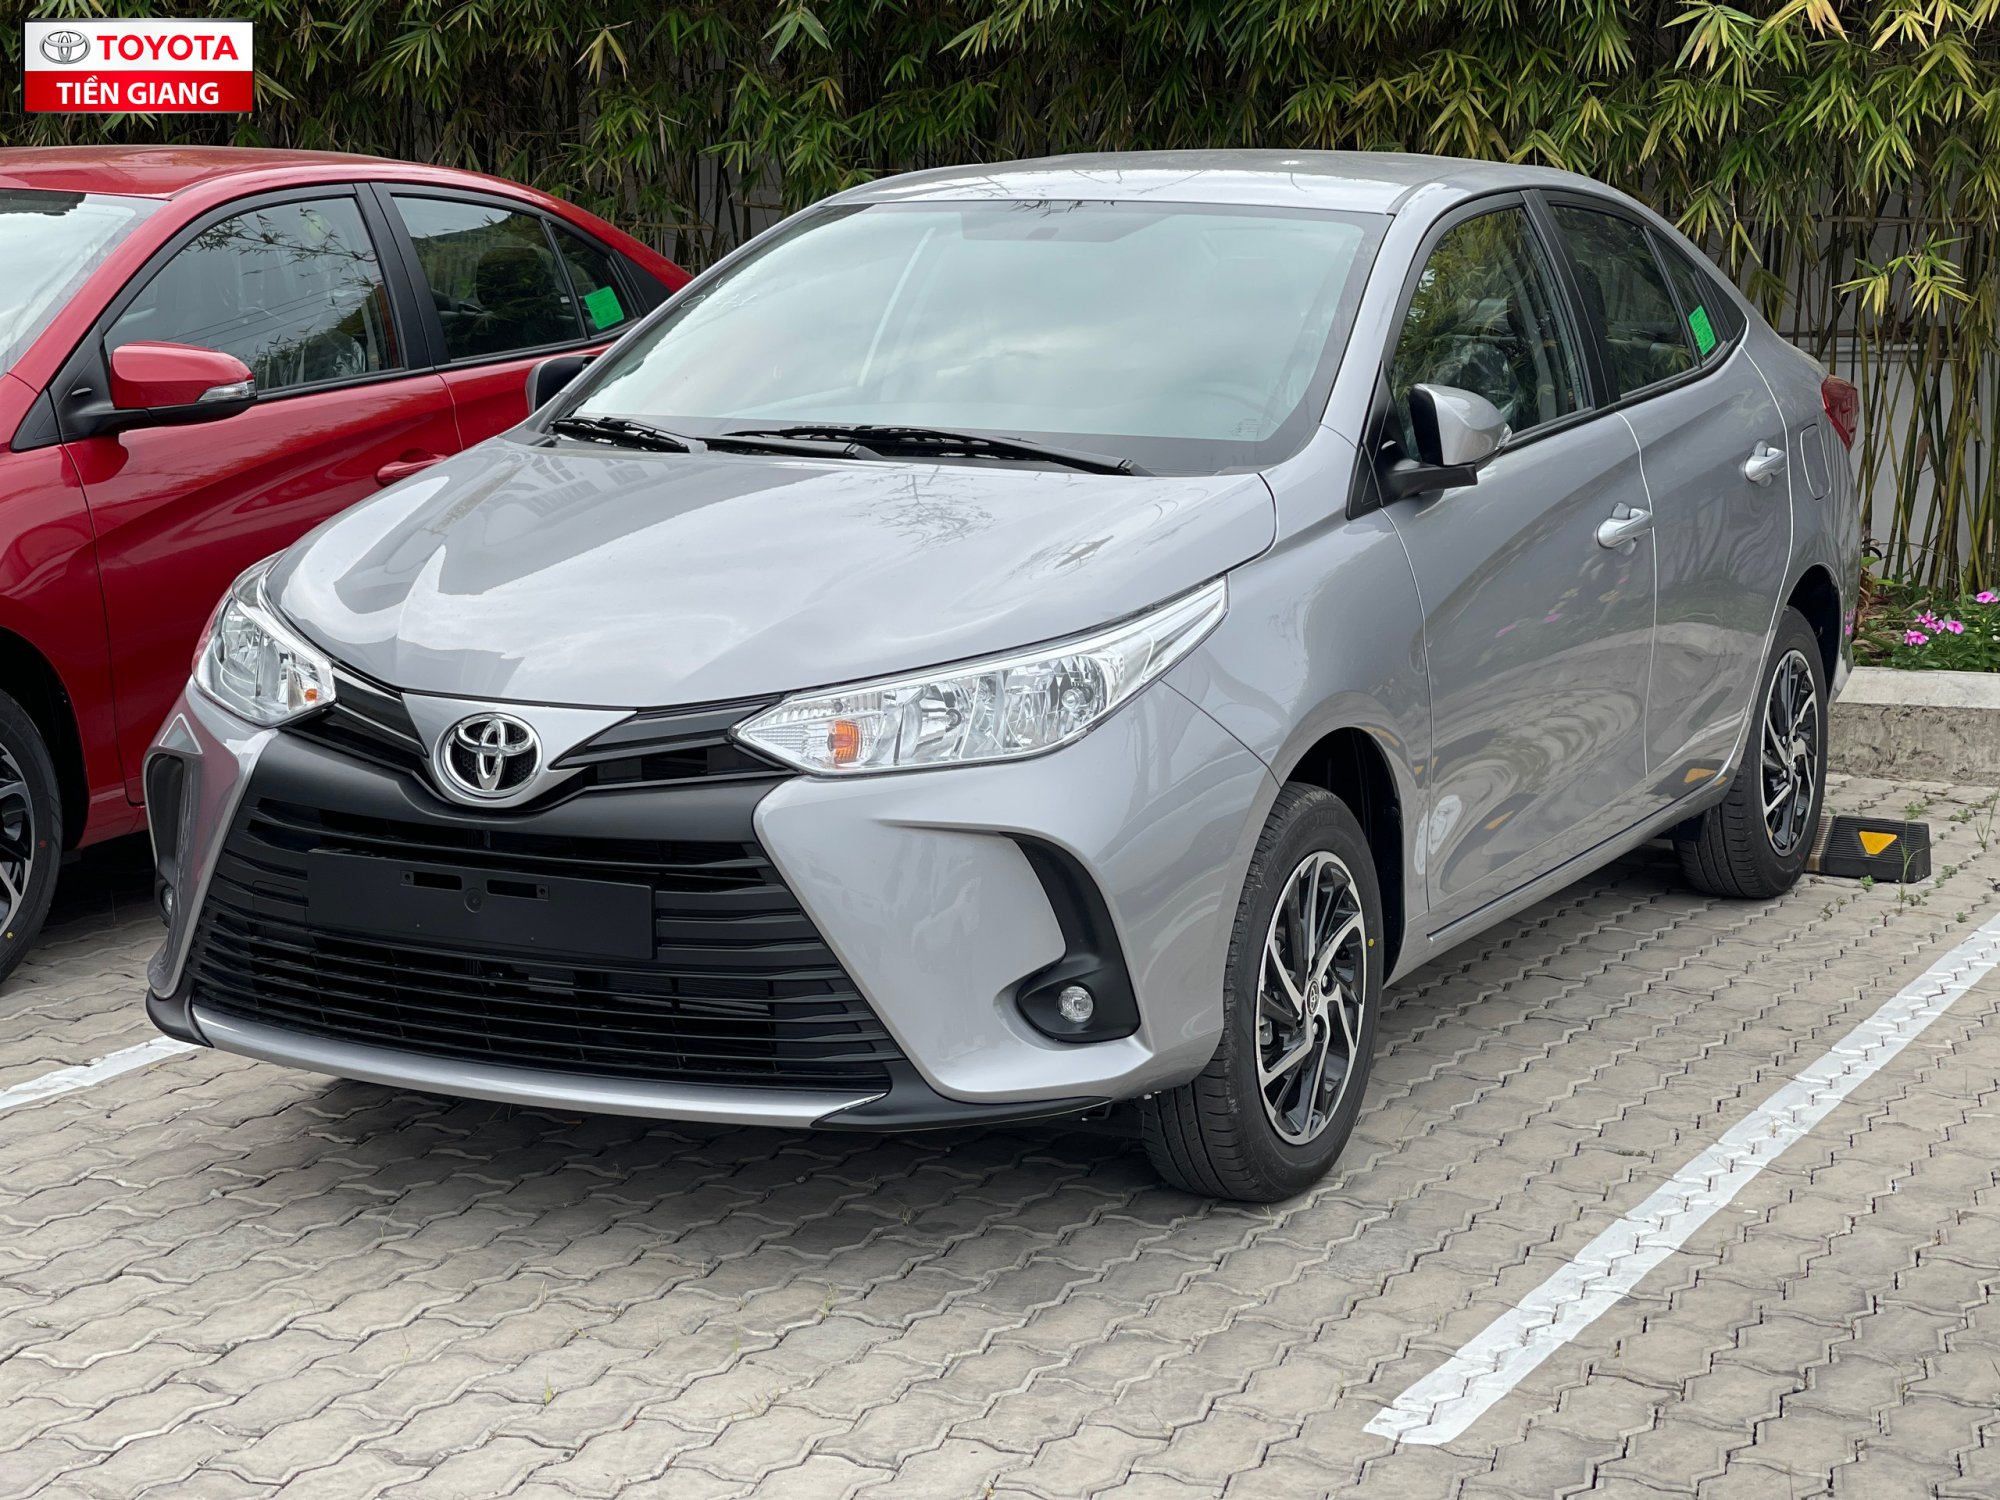 Bảng giá Toyota Vios năm 2021 tại Vinh Nghệ An